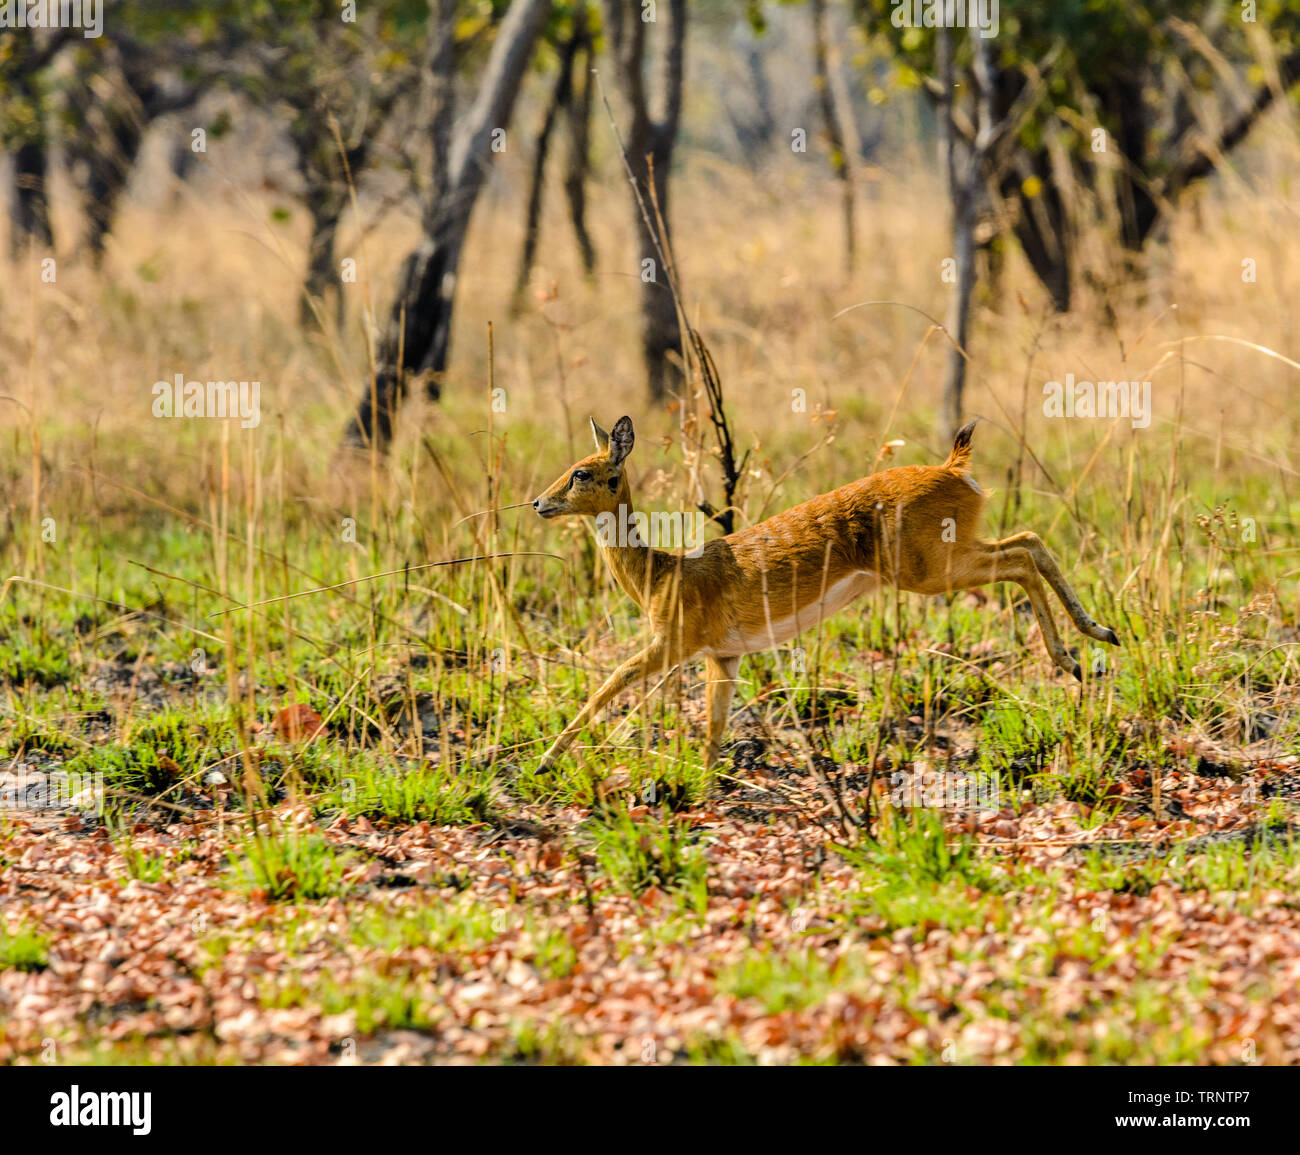 Oribi running through bush in Malawi Stock Photo